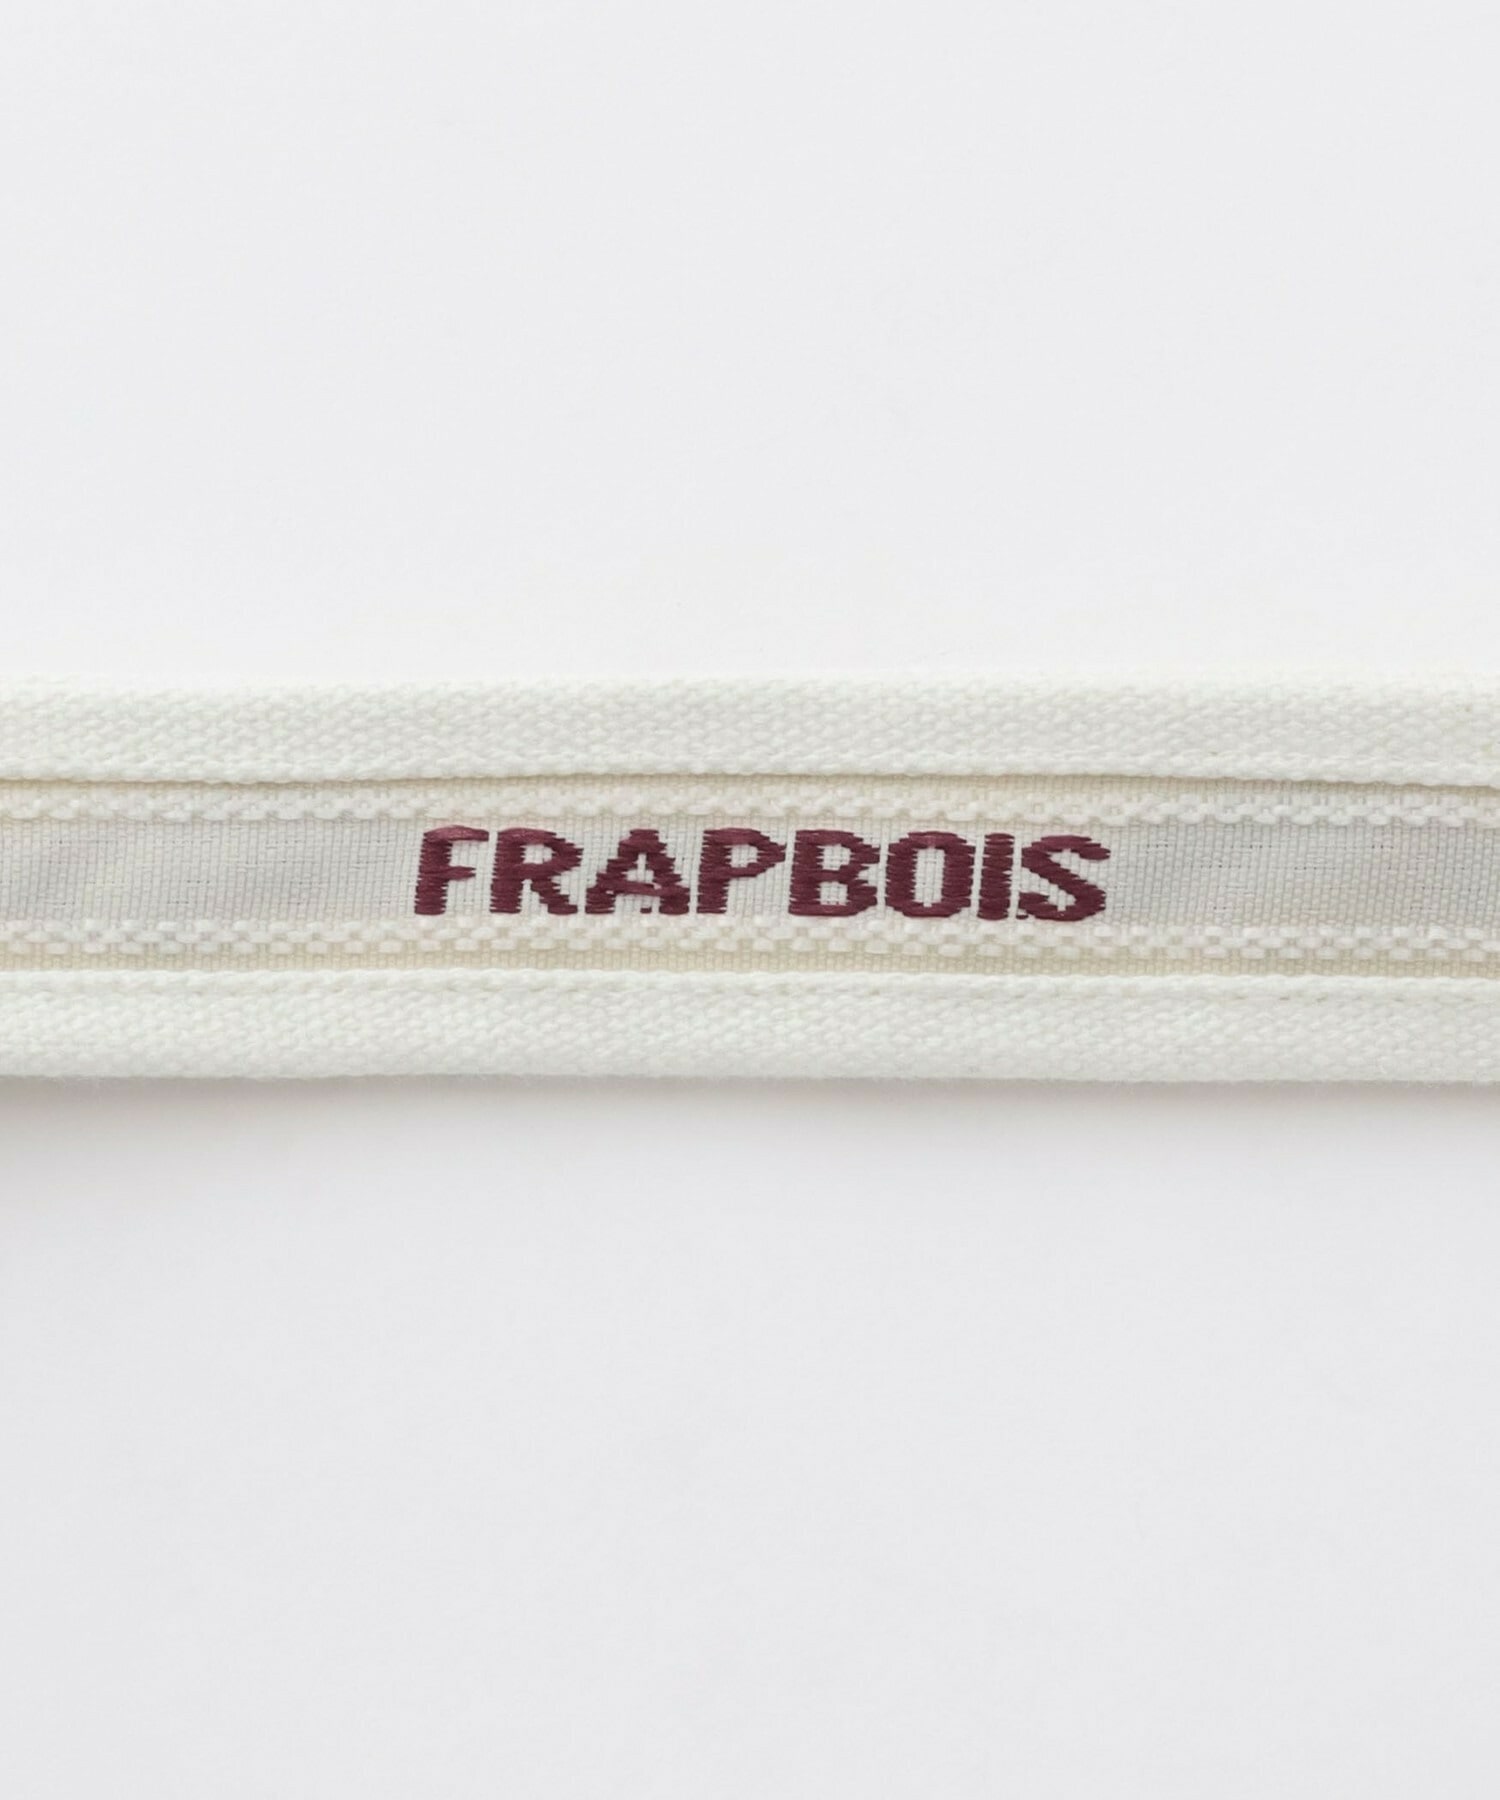 【FRAPBOIS】FRAPBOIS×miffy フェイストート 詳細画像 ブラウン 4